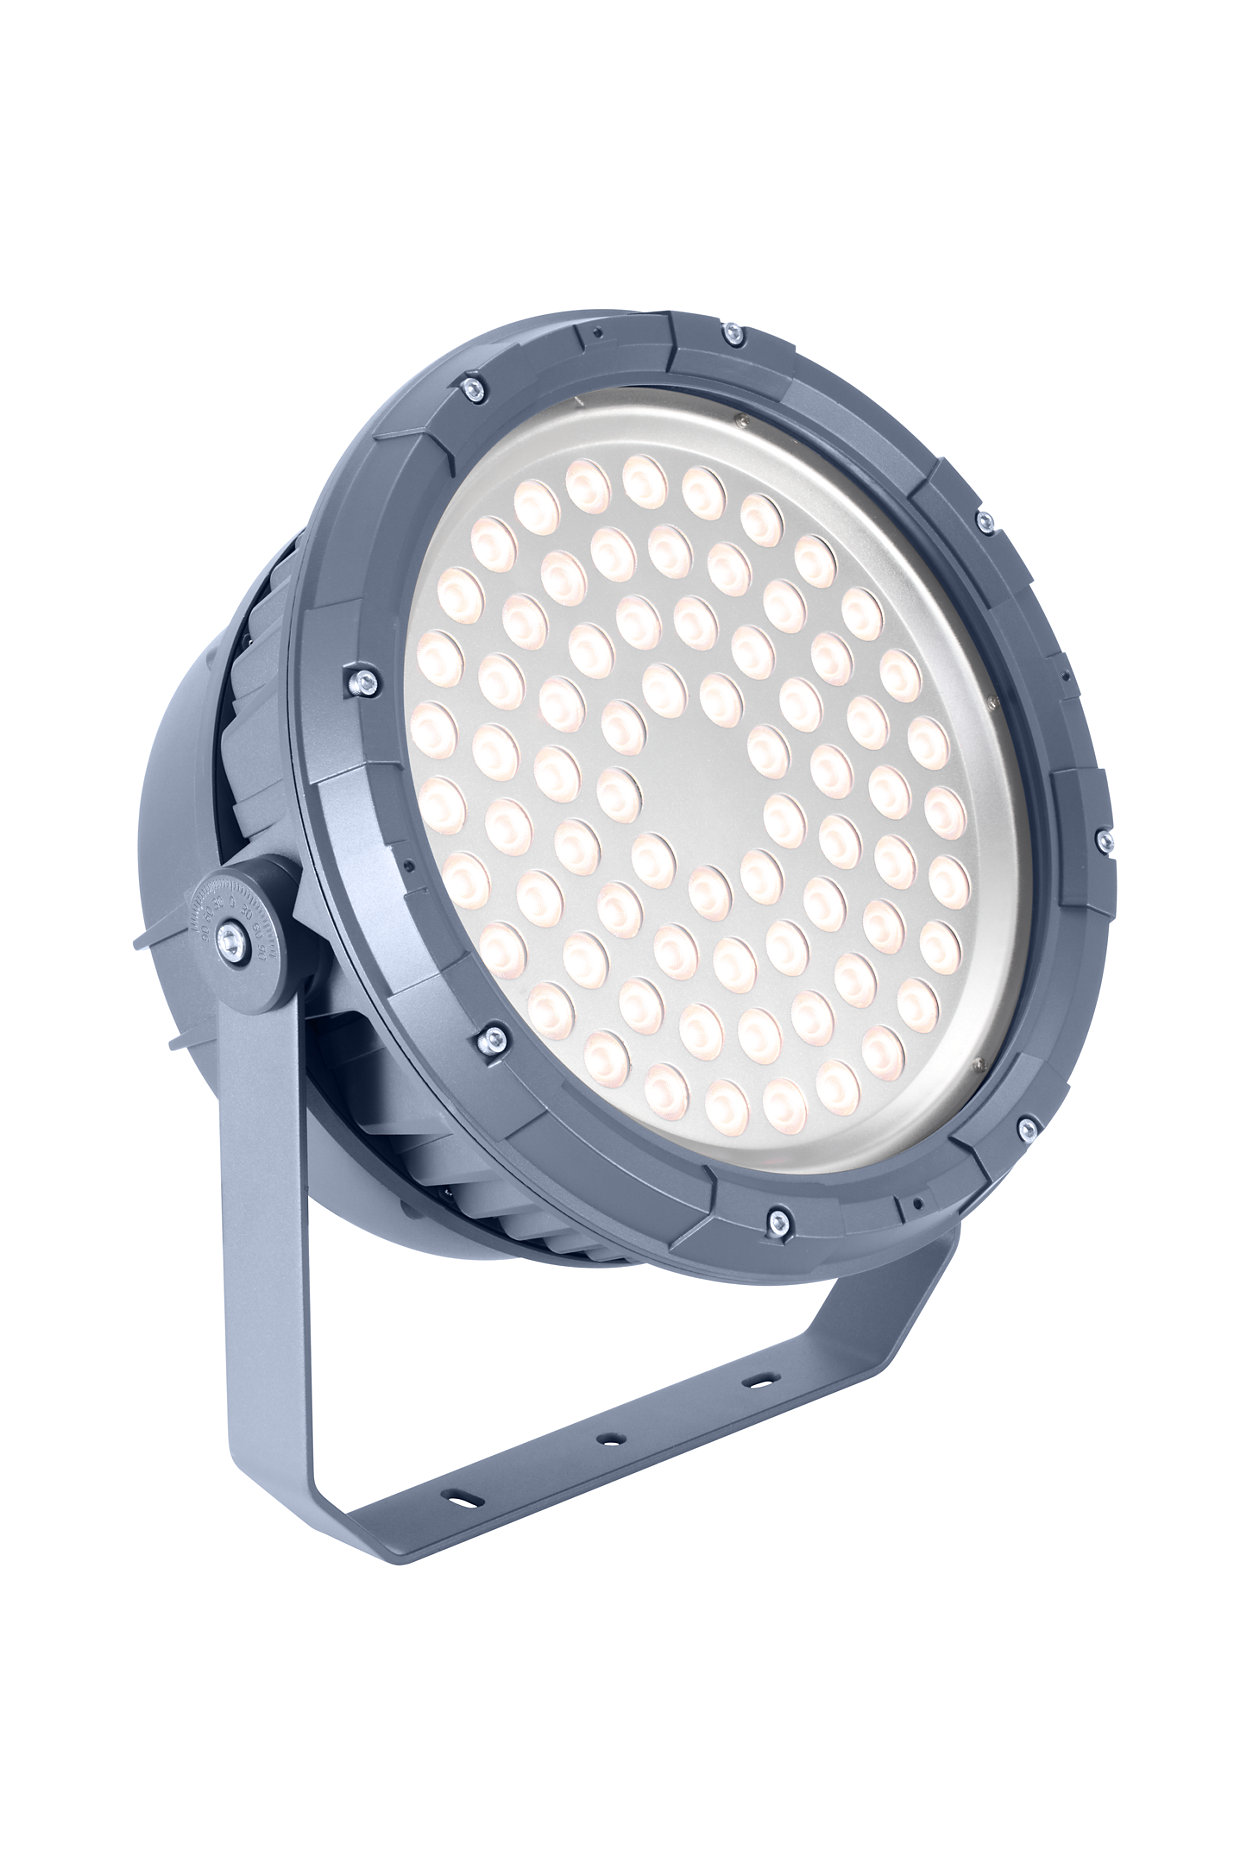 Lampu tembak LED arsitektur untuk pencahayaan tetap atau dinamis.